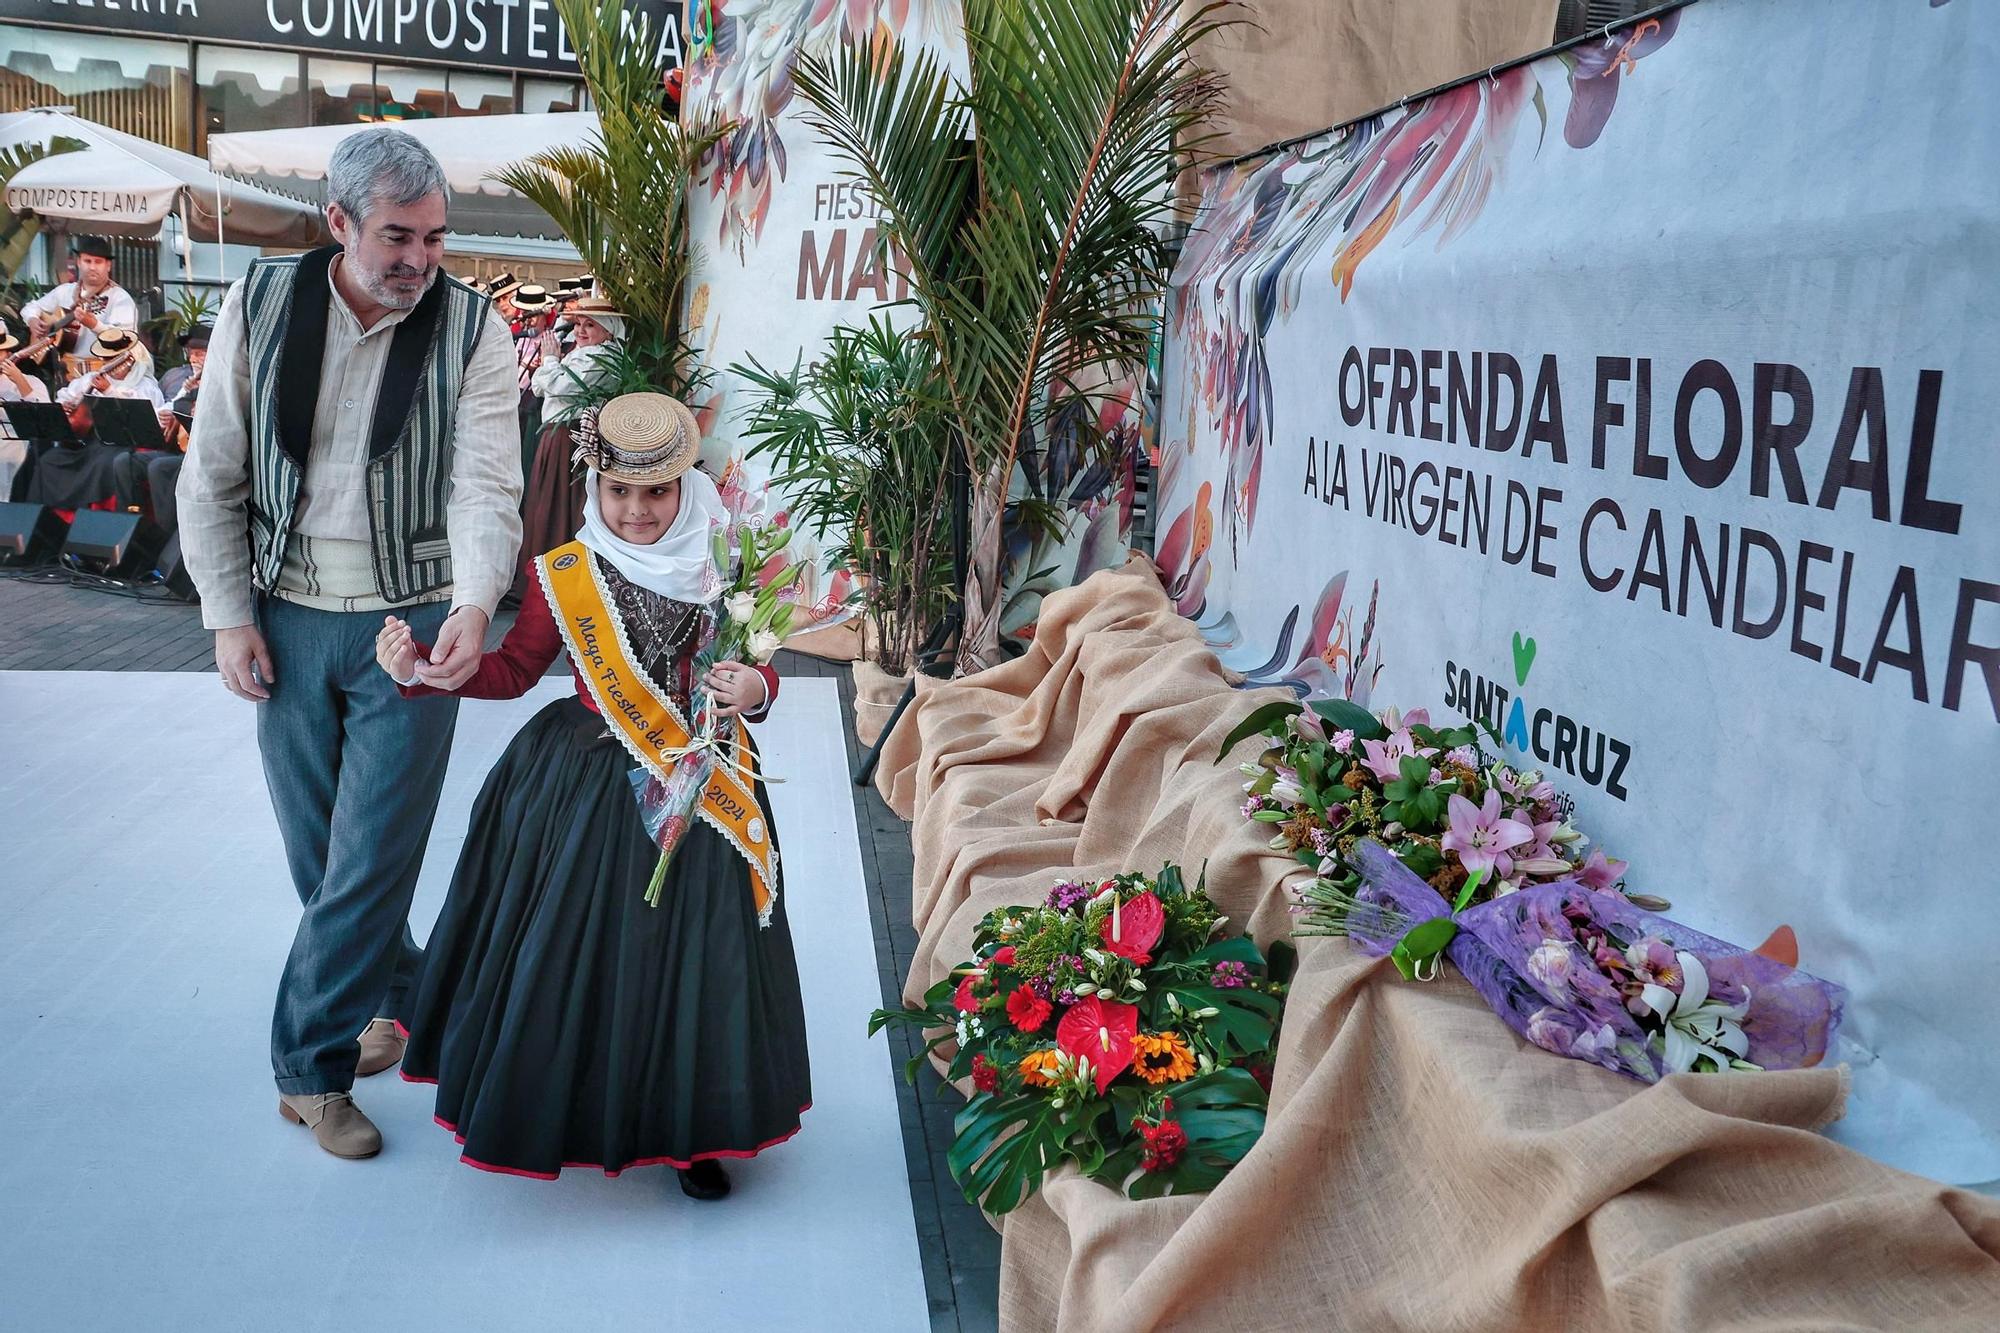 Ofrenda a la Patrona de Canarias en la víspera del día grande de Santa Cruz